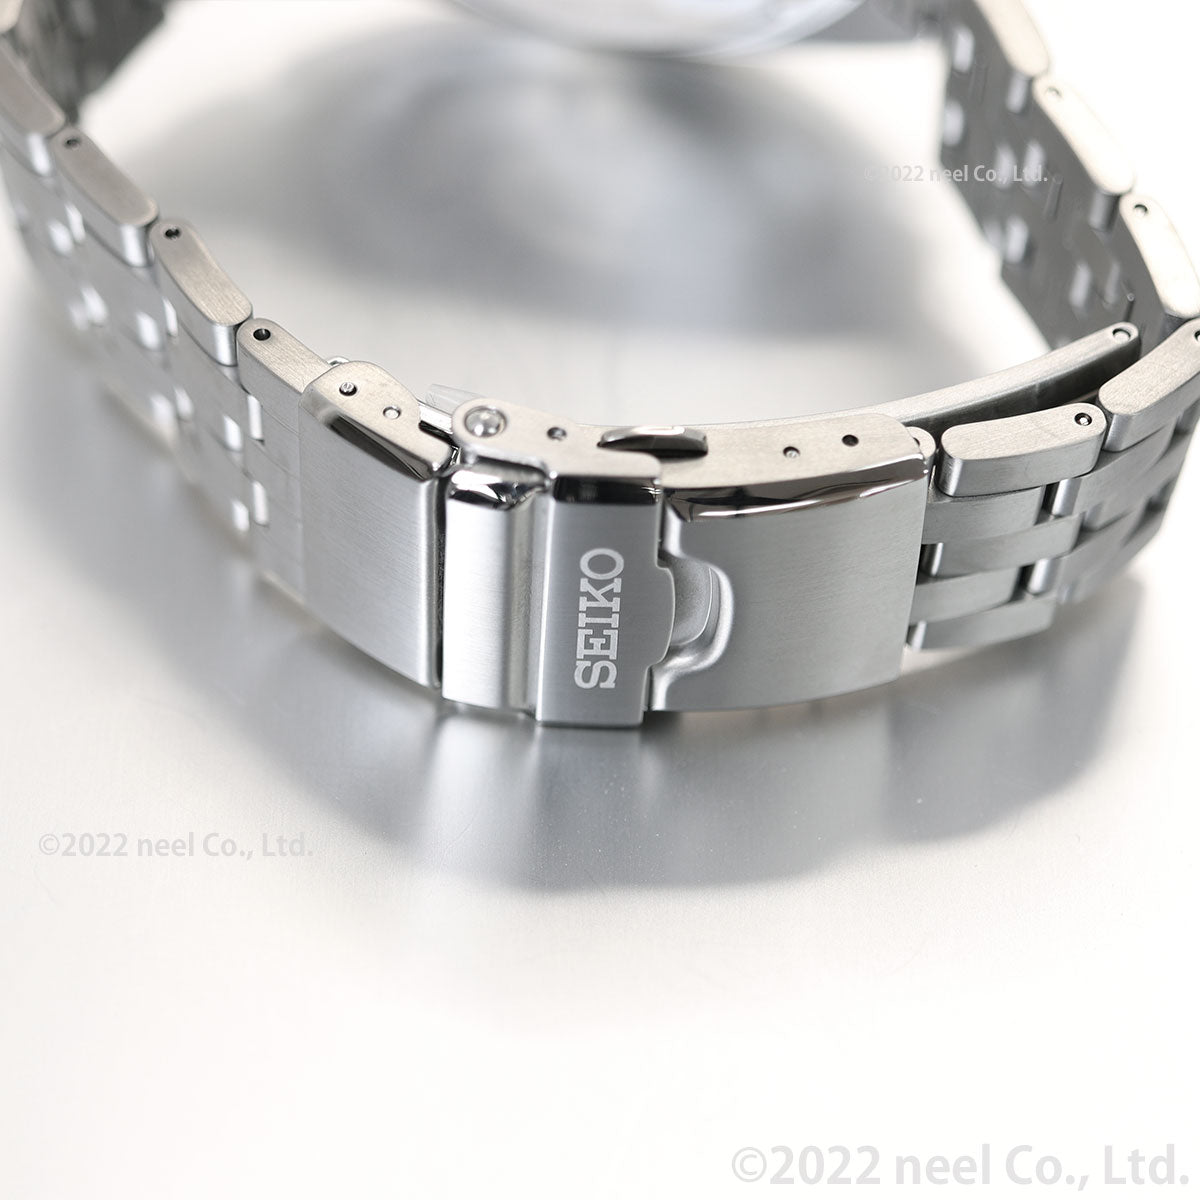 セイコー プロスペックス SEIKO PROSPEX 1stダイバーズ メカニカル 自動巻き コアショップ専用モデル 腕時計 メンズ SBDC173